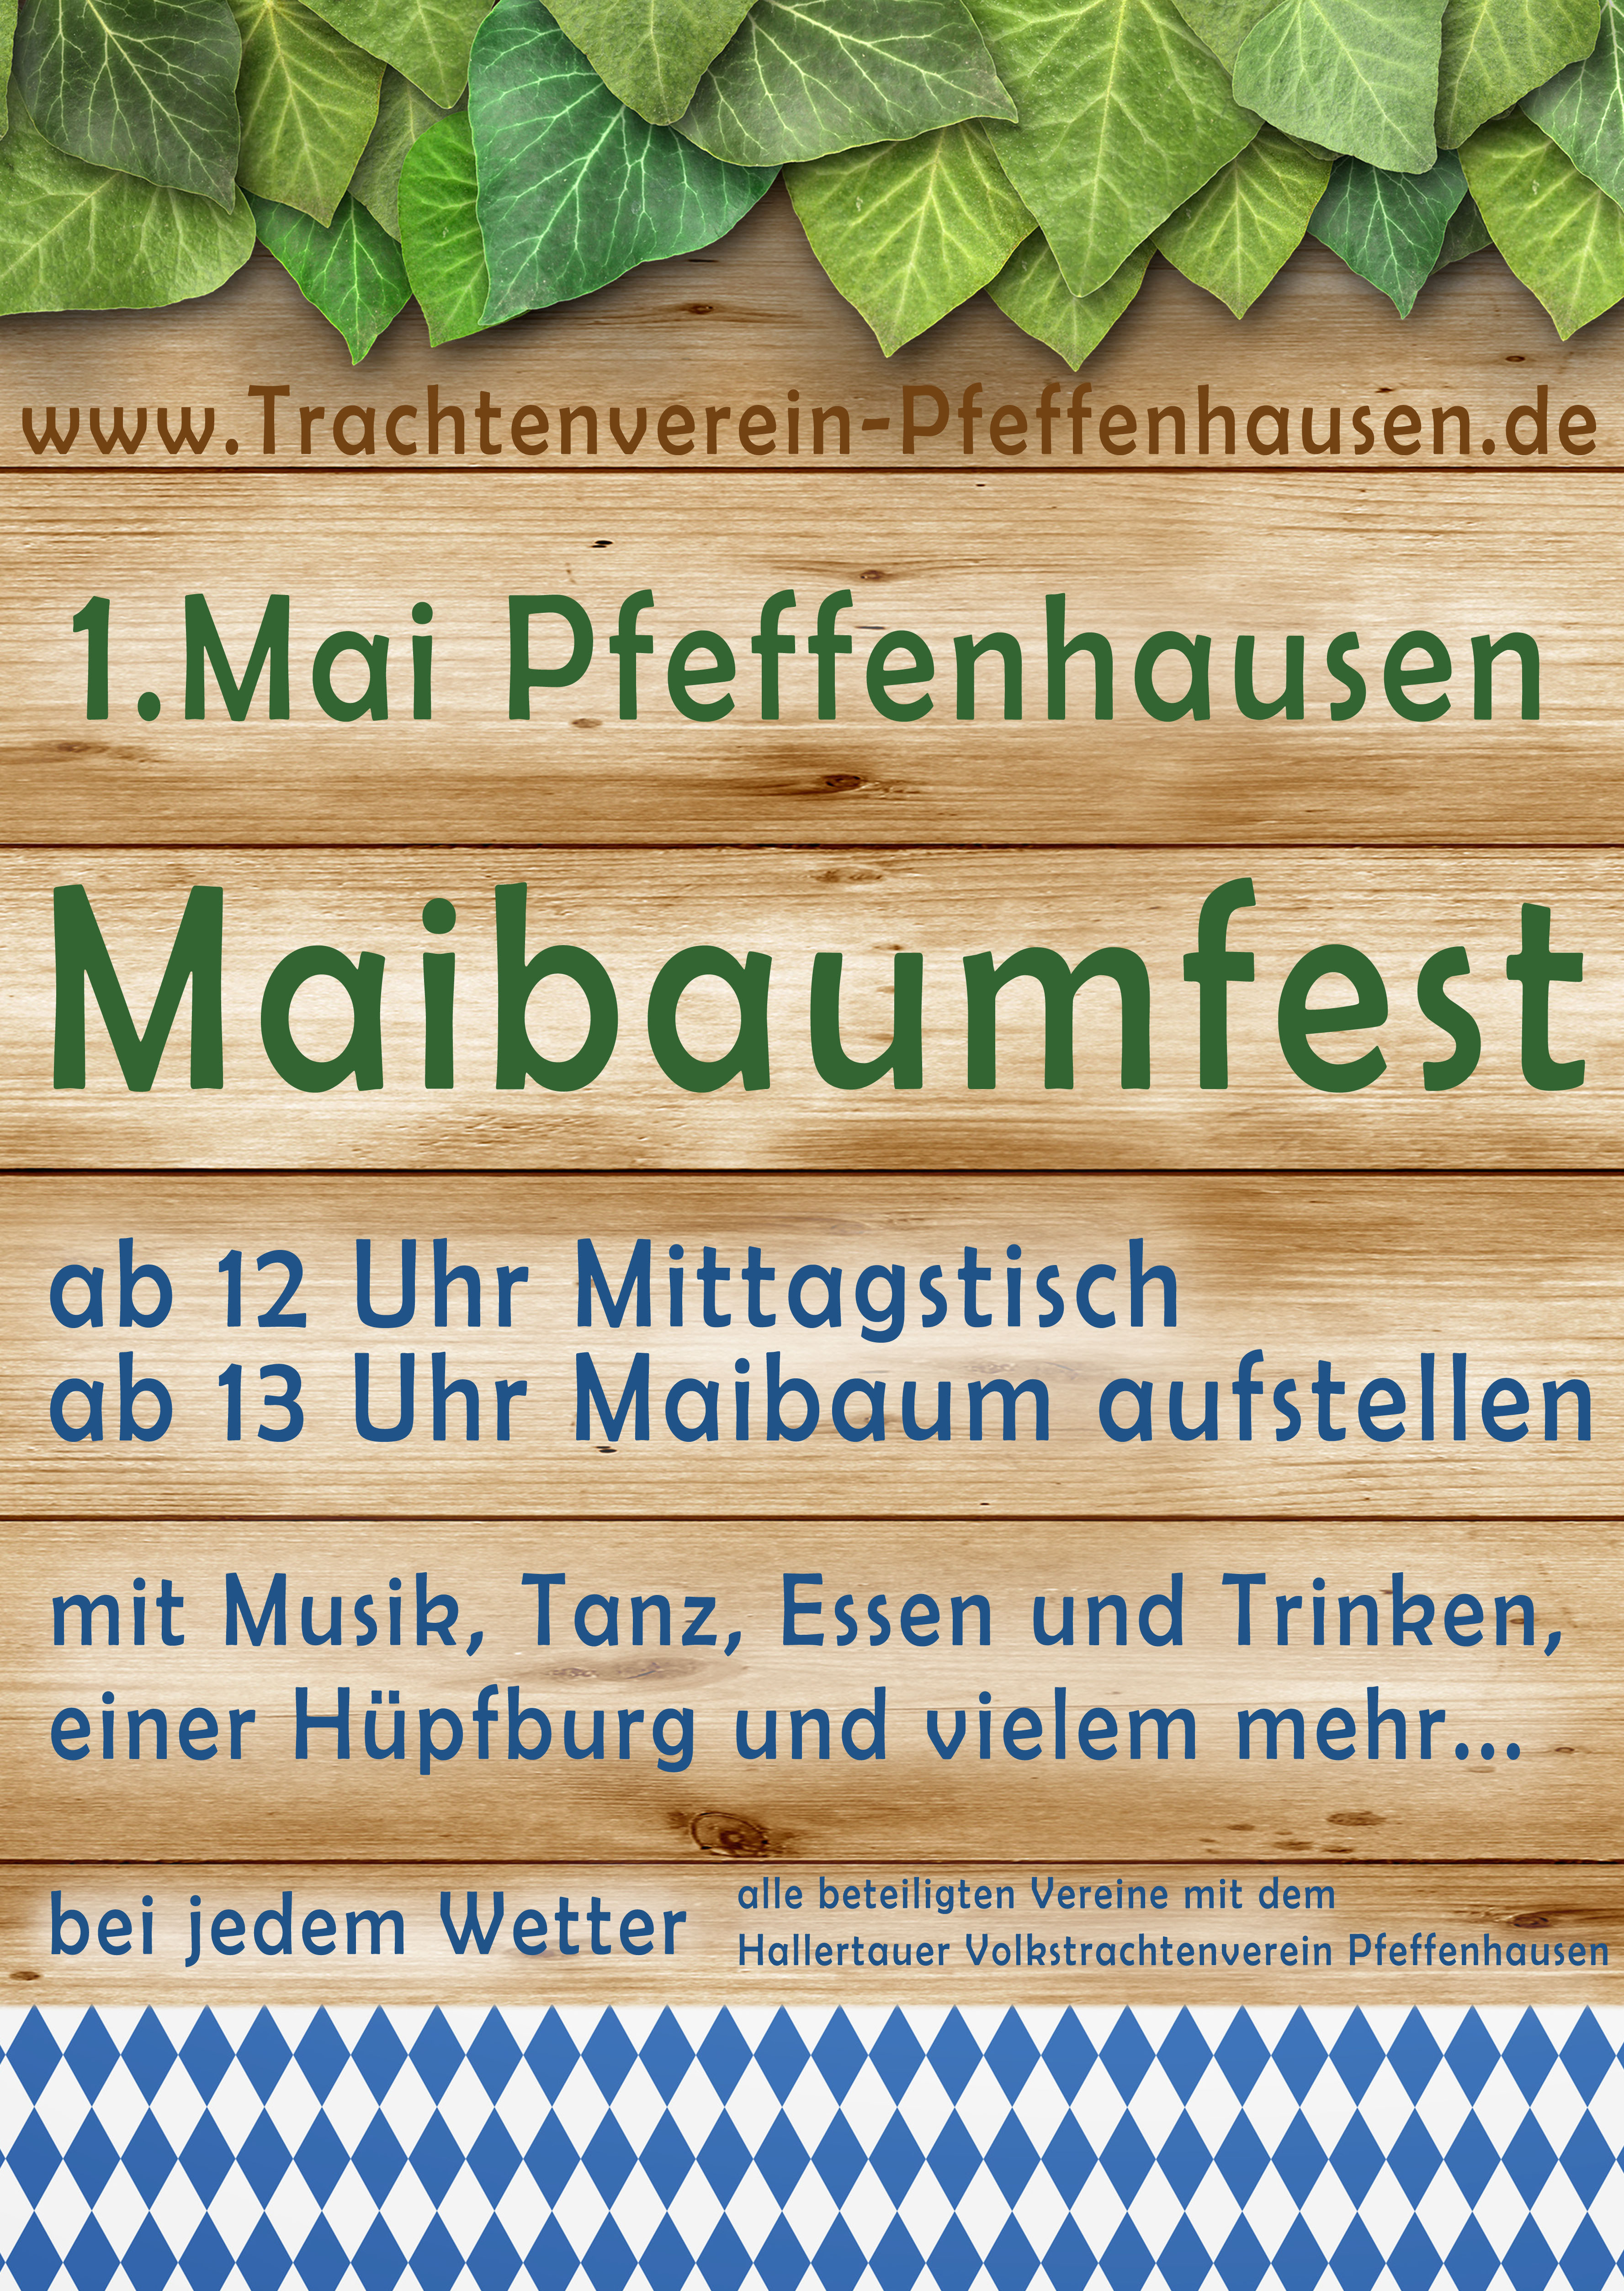 2019 maibaum pfeffenhausen plakat final